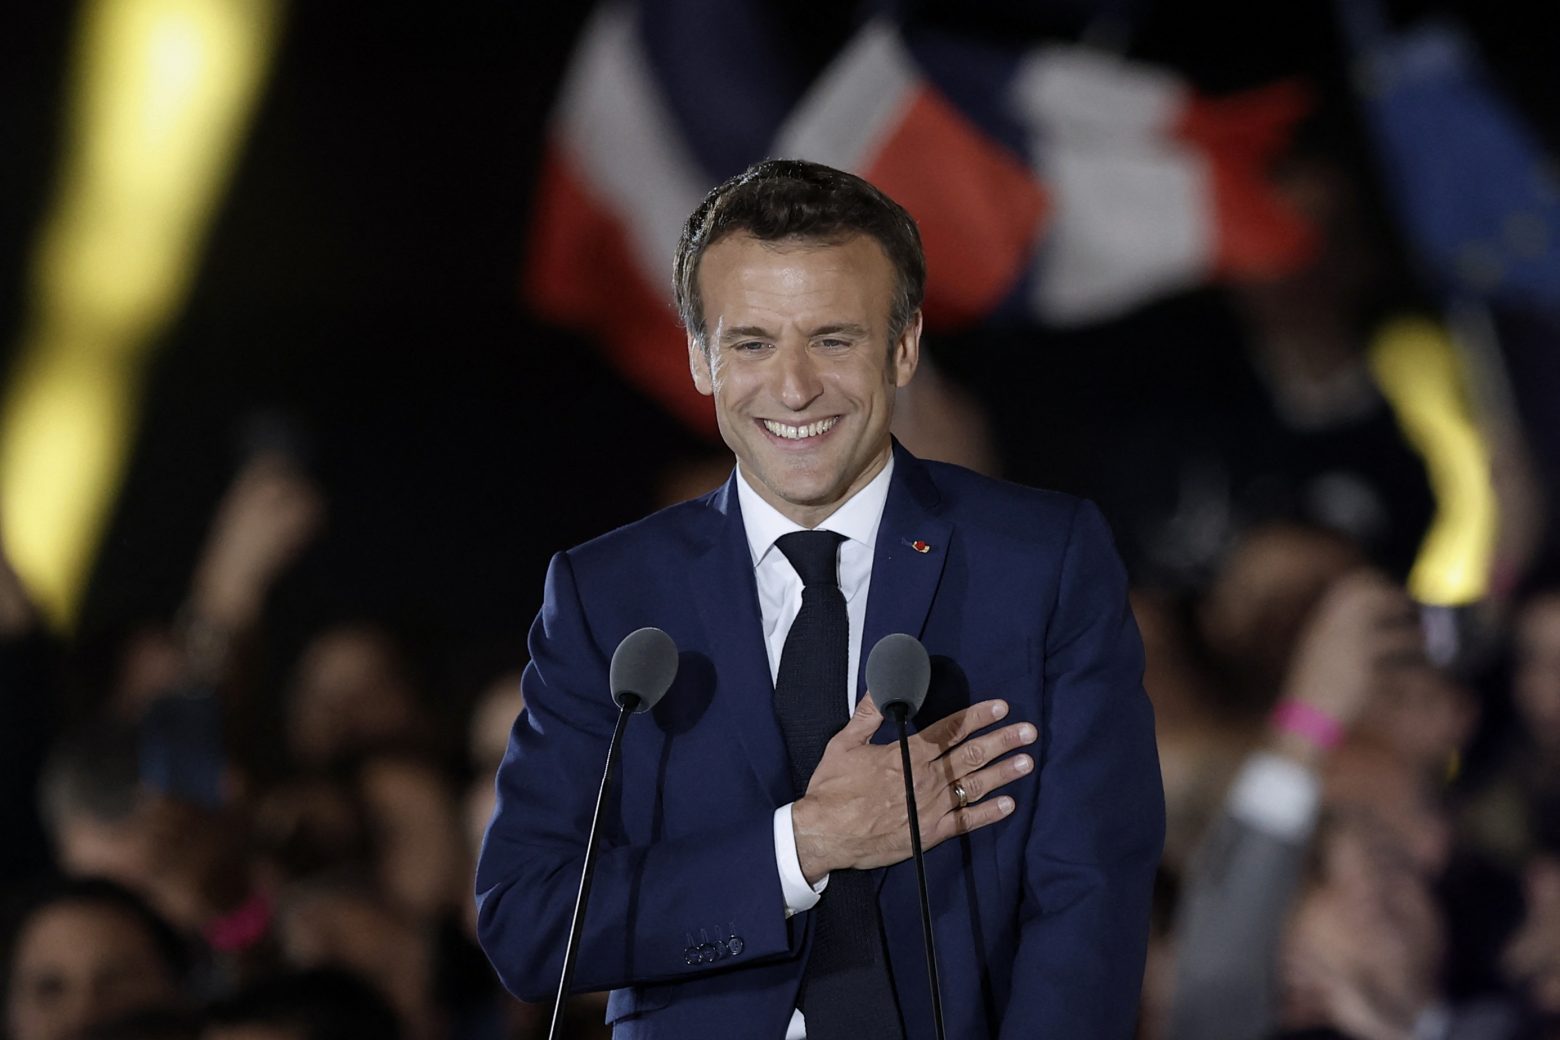 Μακρόν: «Είμαι πρόεδρος όλων των Γάλλων – Έχουμε ευθύνη απέναντι στη δημοκρατία»